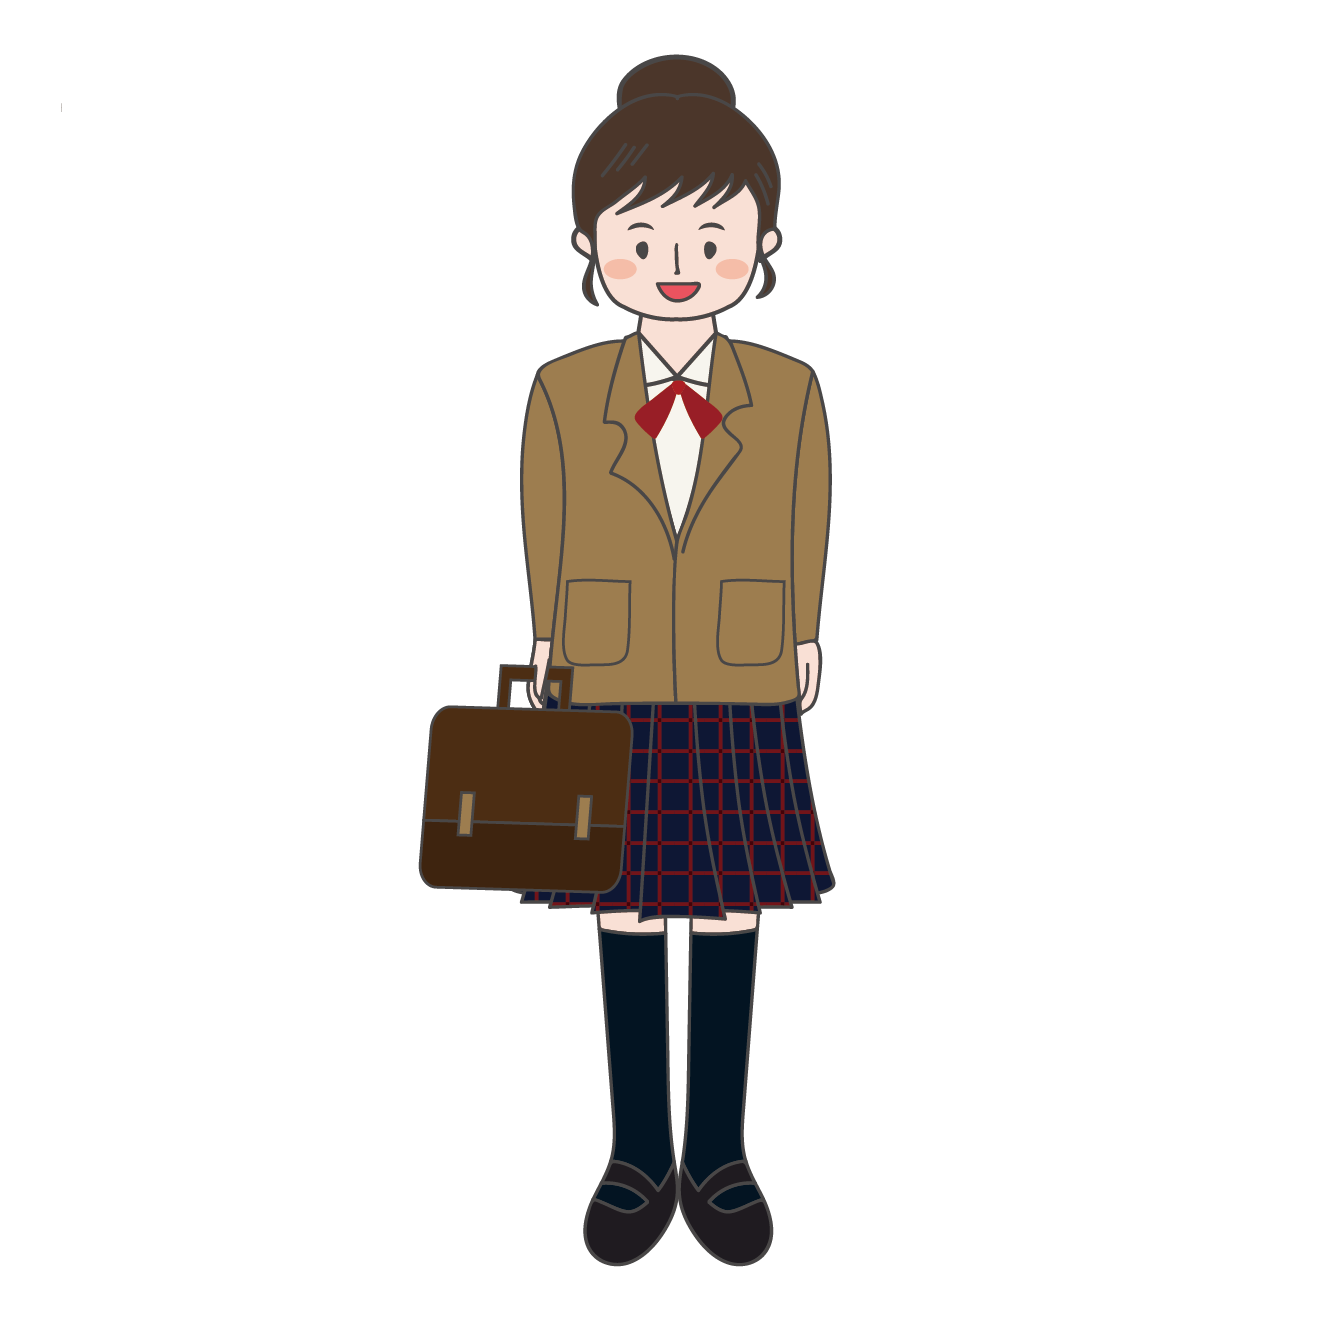 制服を着た中学生の女の子のイラスト 商用フリー 無料 のイラスト